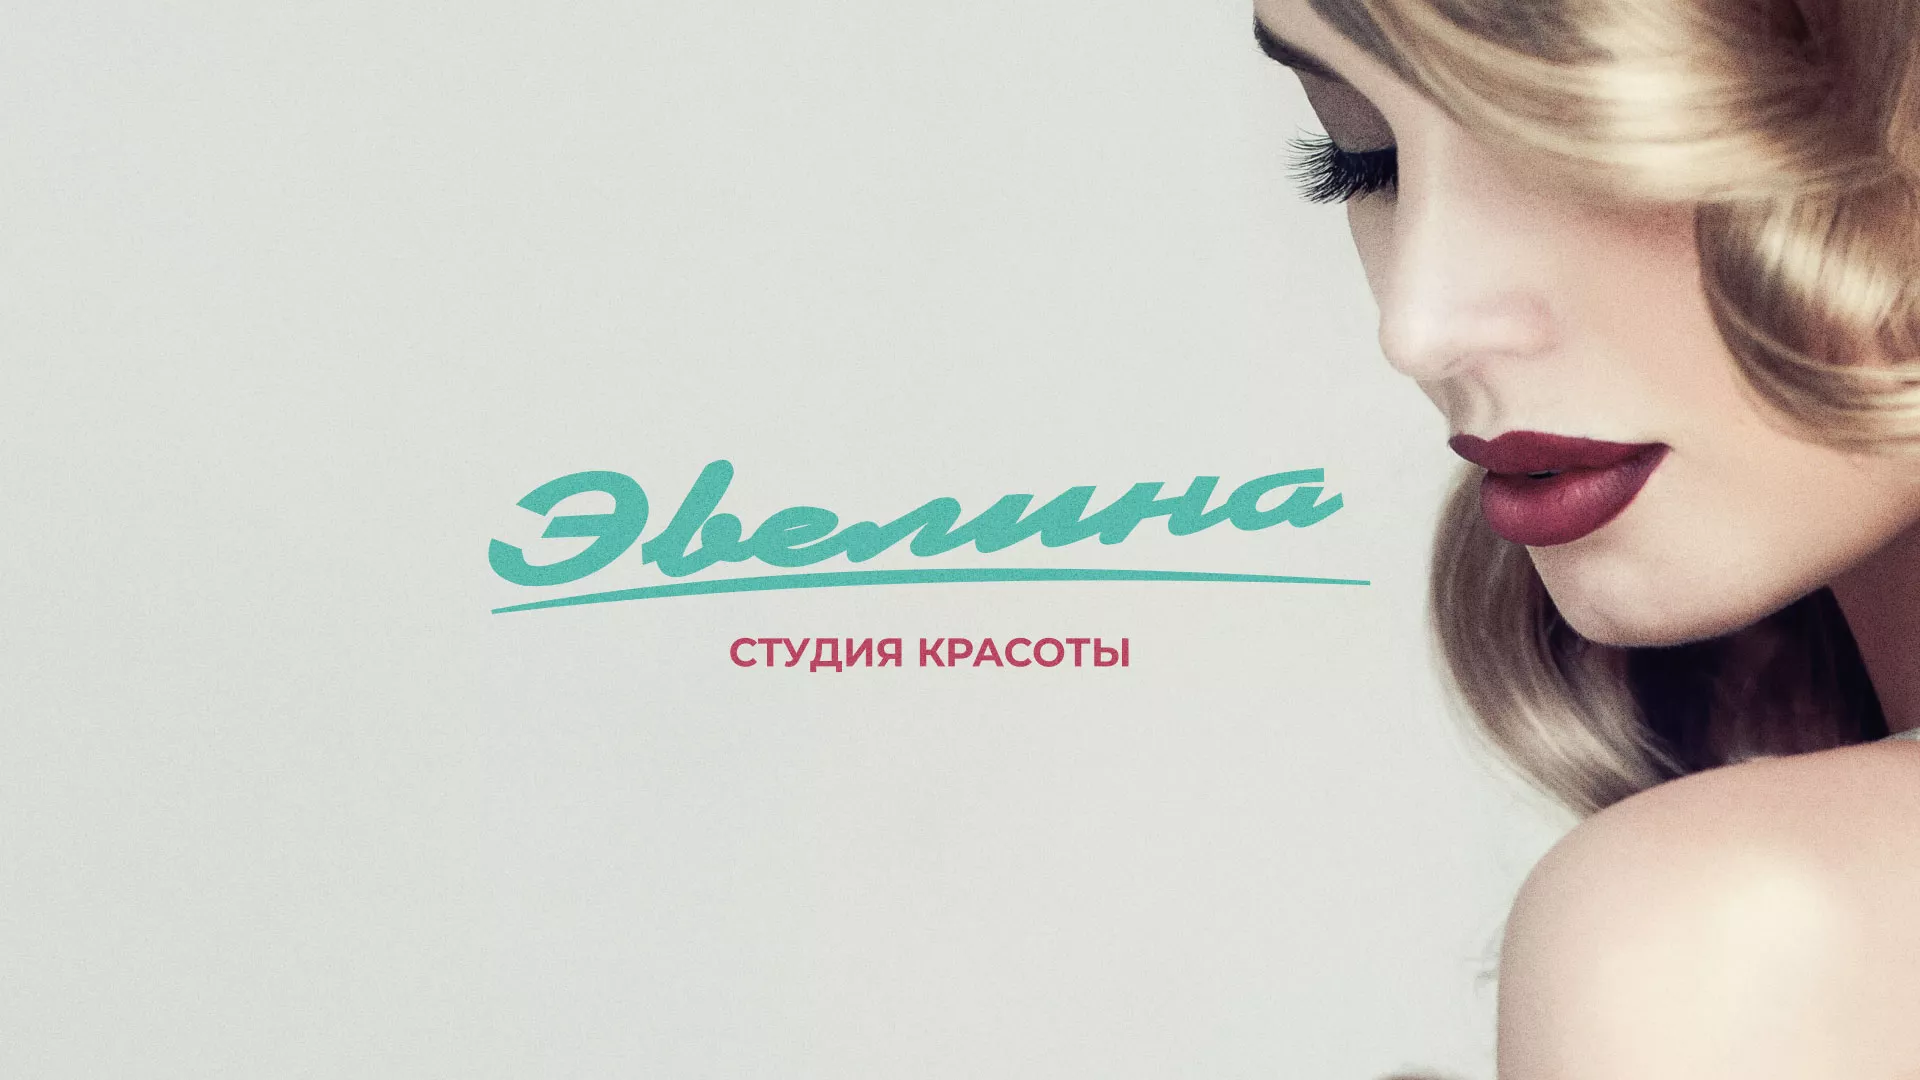 Разработка сайта для салона красоты «Эвелина» в Пушкино